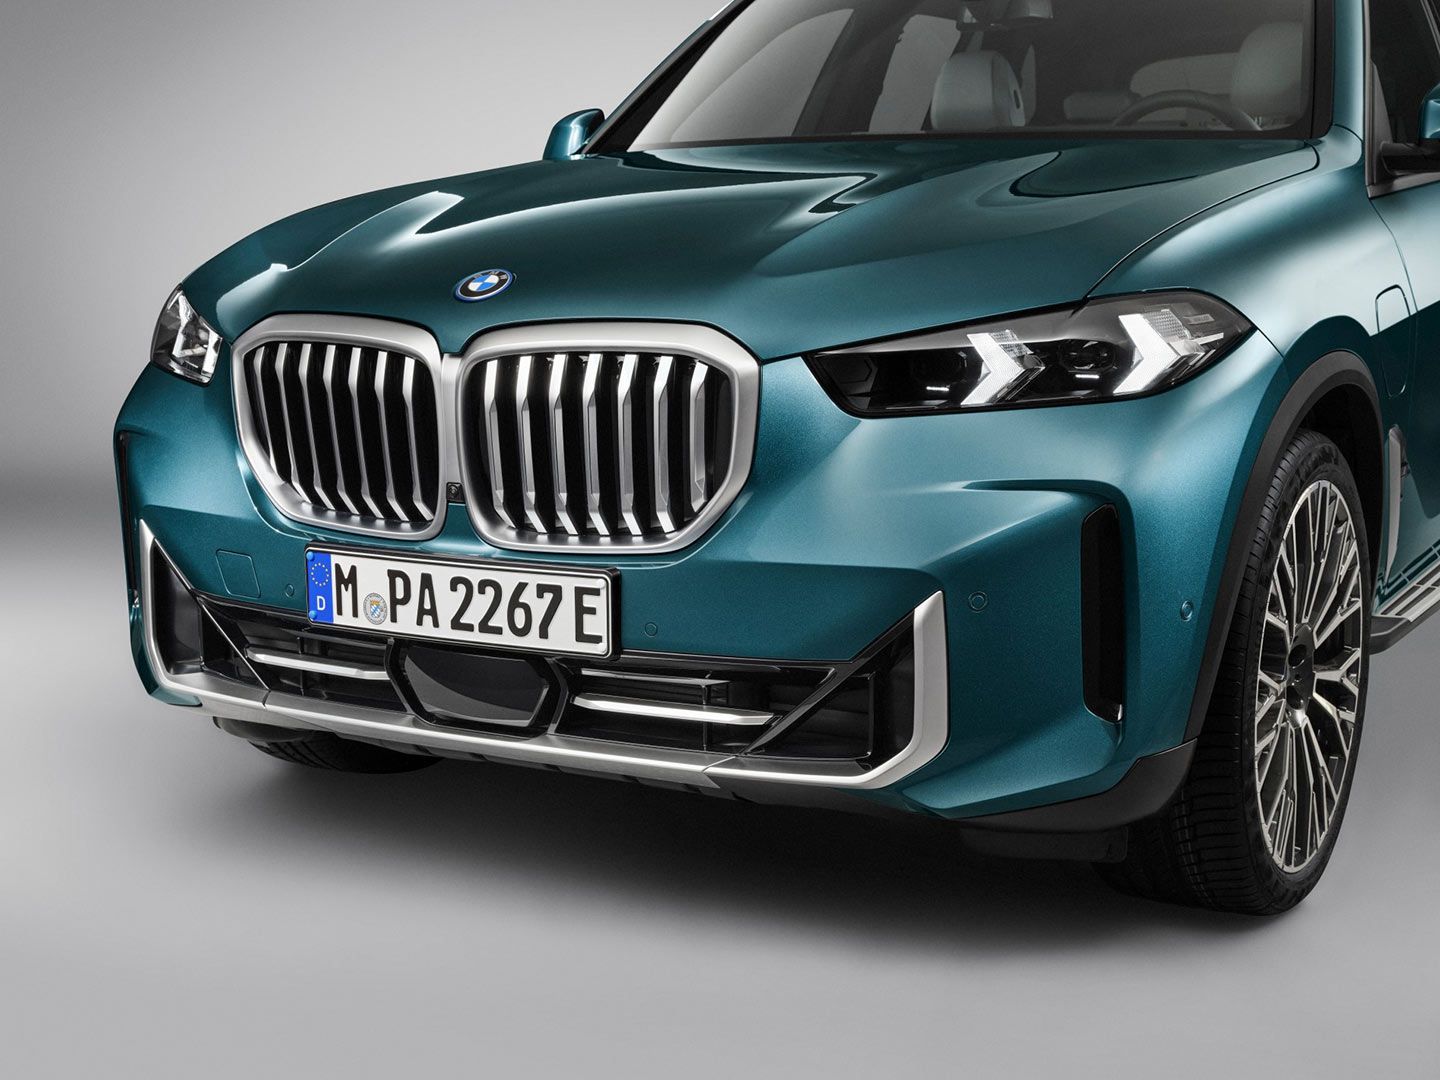 Le BMW X5 2024, comme de nombreux autres modèles de sa gamme, a des volets coulissants cachés derrière la calandre en forme de rein qui s'ouvrent et se ferment en fonction des besoins de la voiture en matière de circulation d'air vers le radiateur.